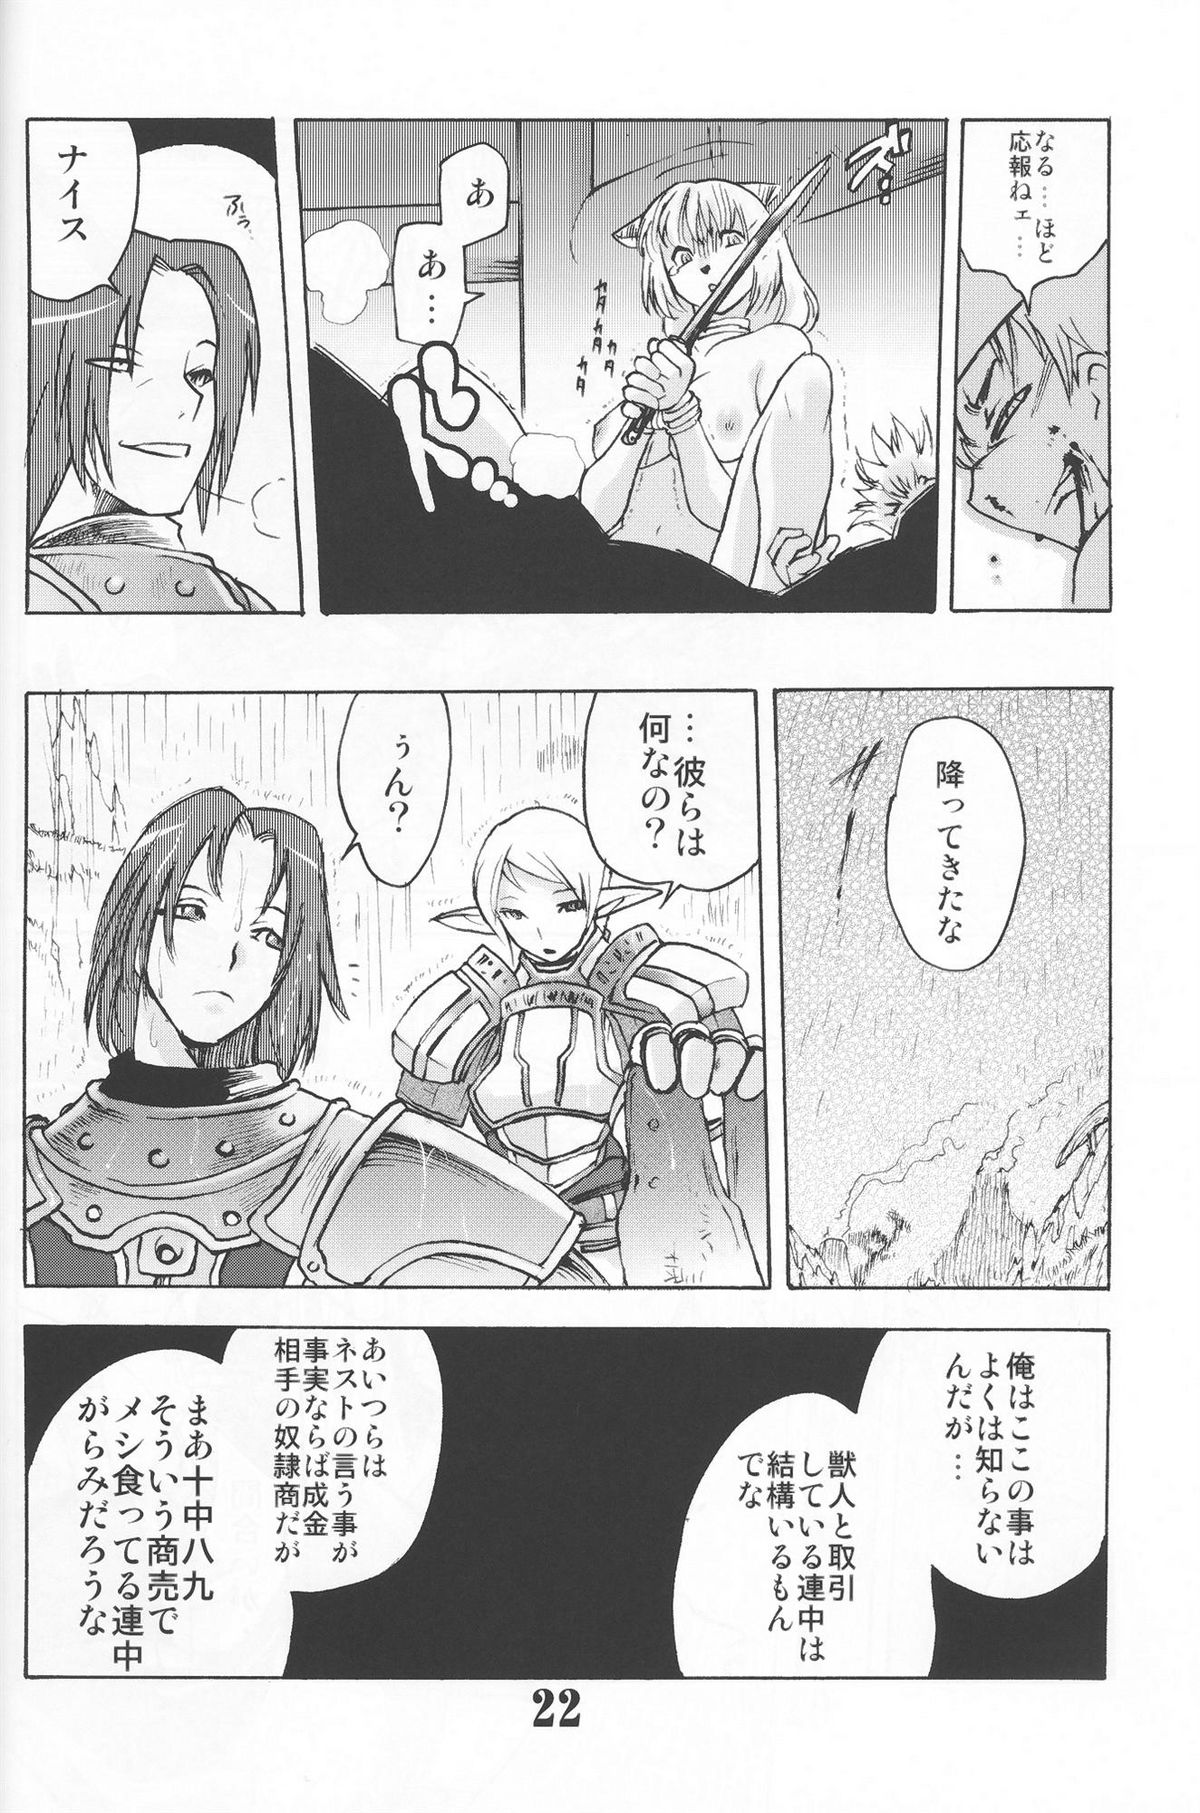 Gedoh XI-4 (外道XI-4) page 21 full